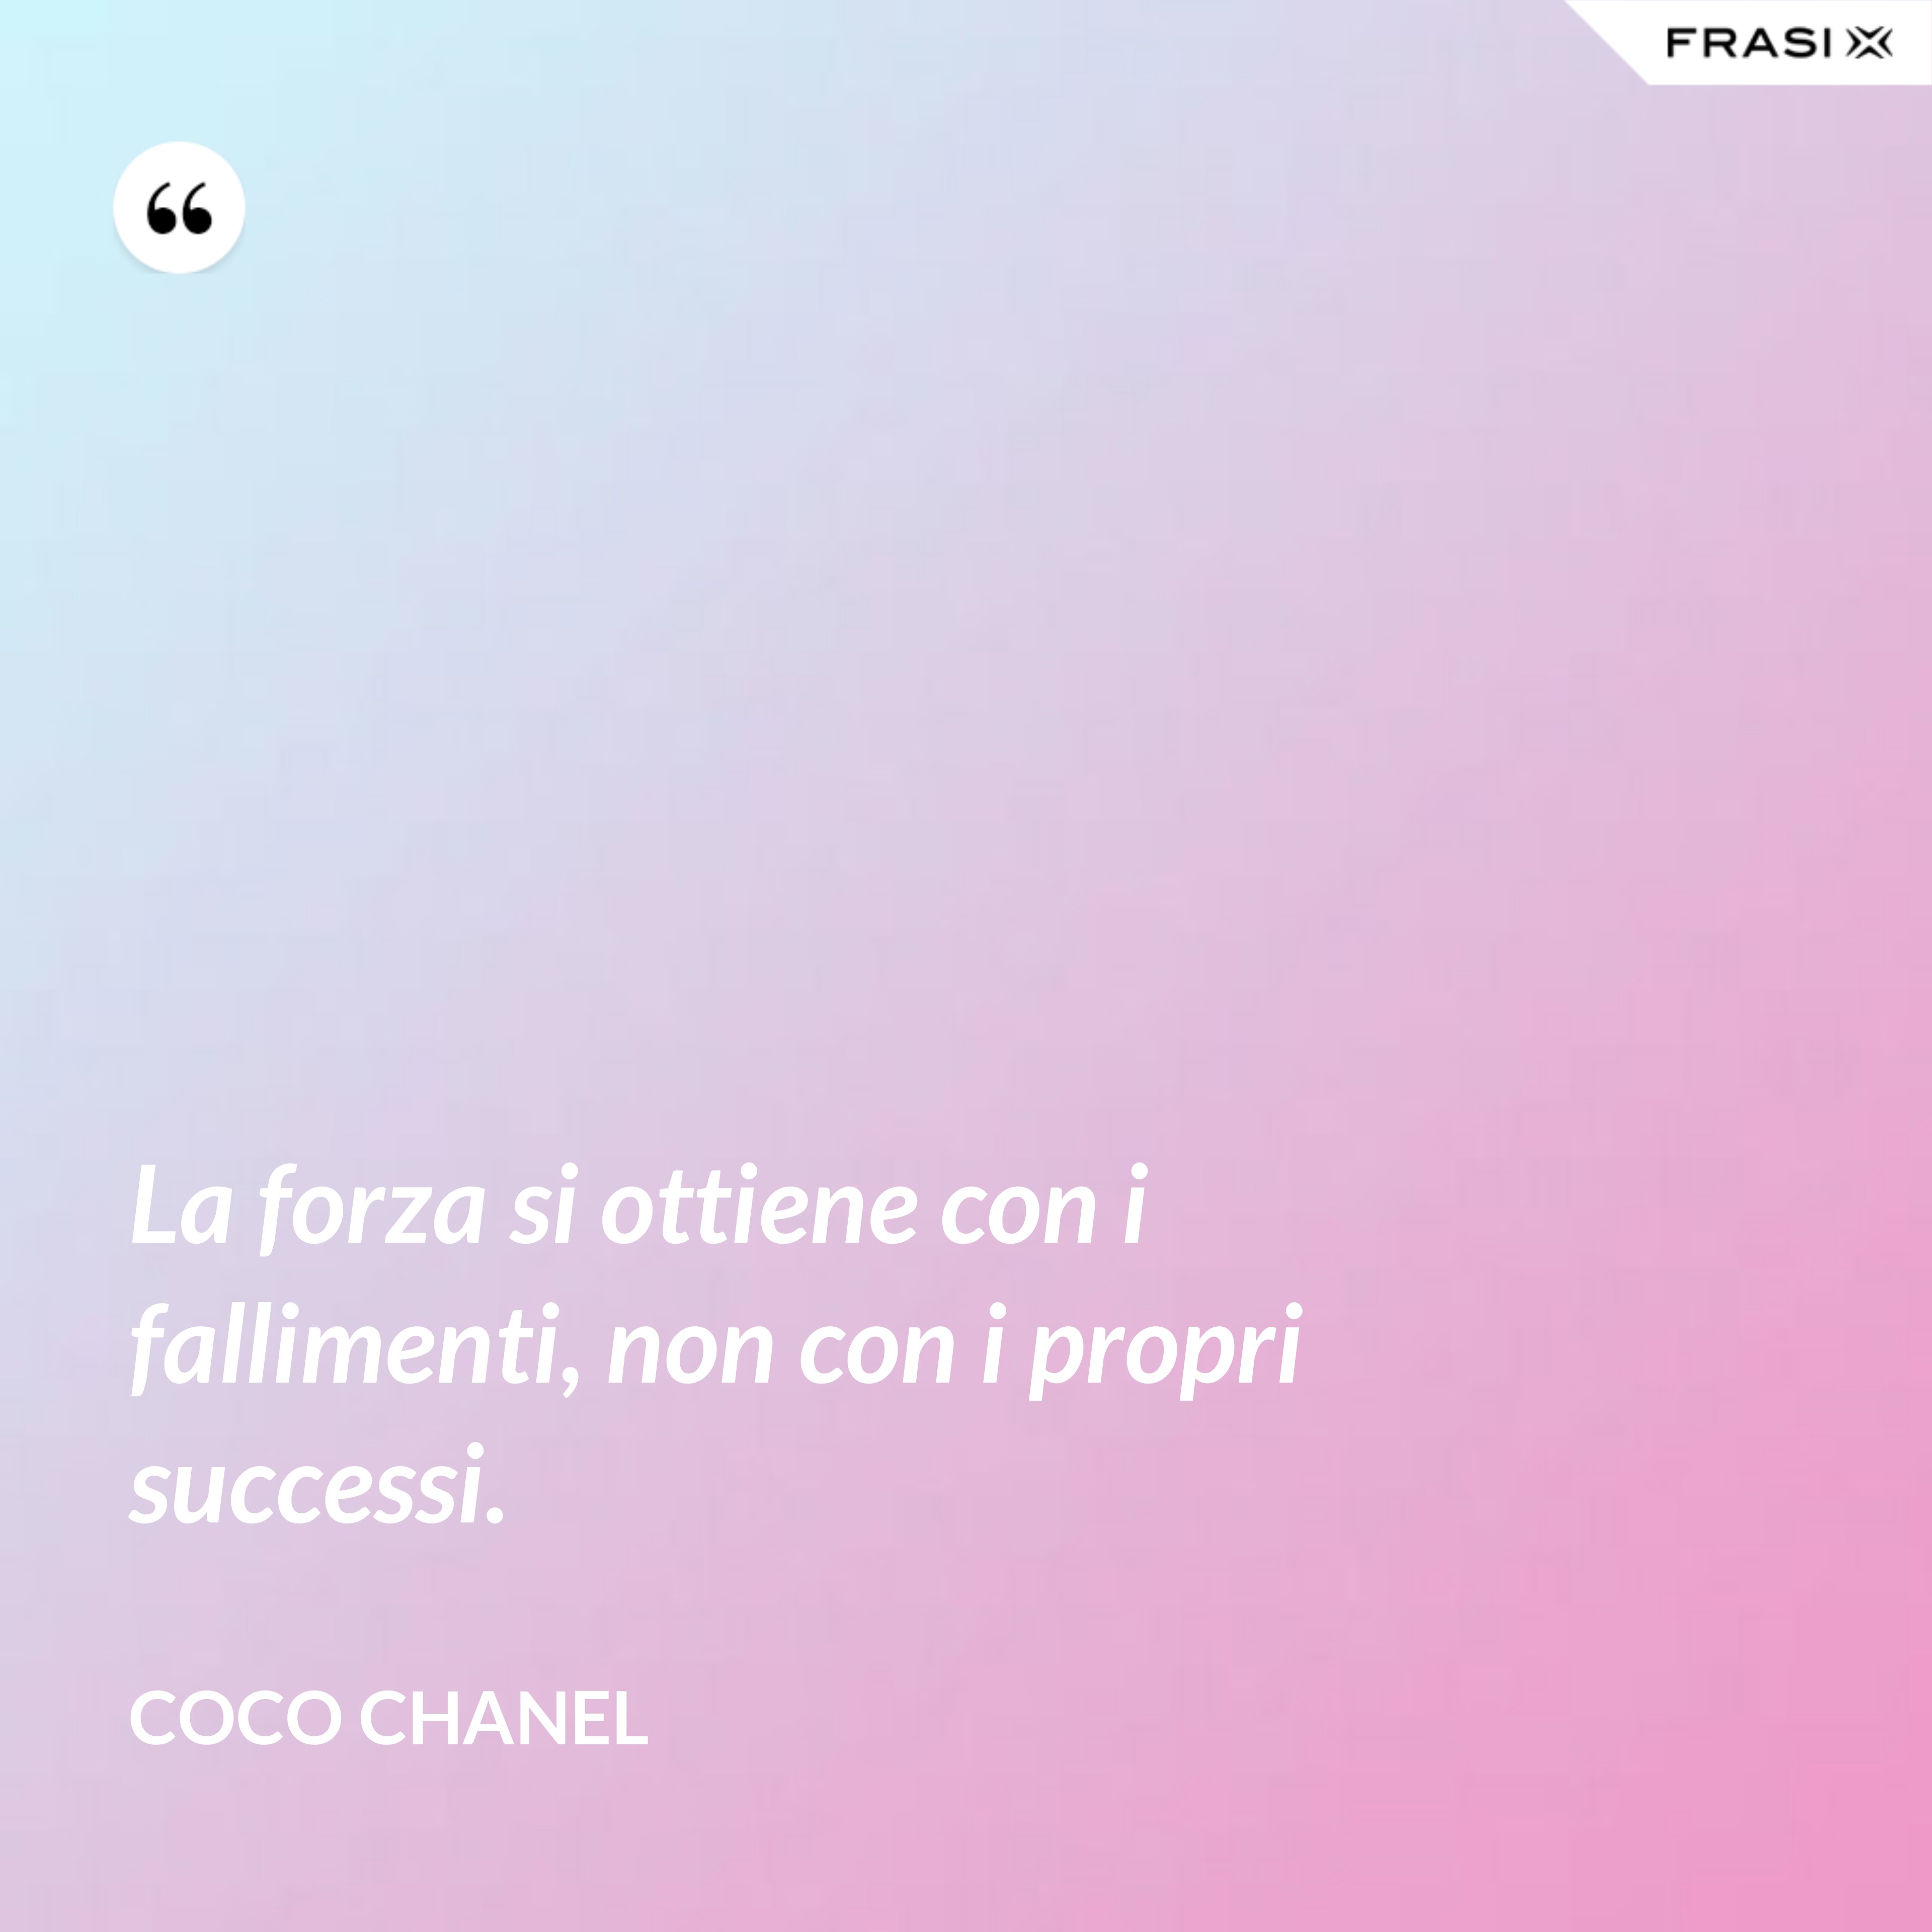 La forza si ottiene con i fallimenti, non con i propri successi. - Coco Chanel